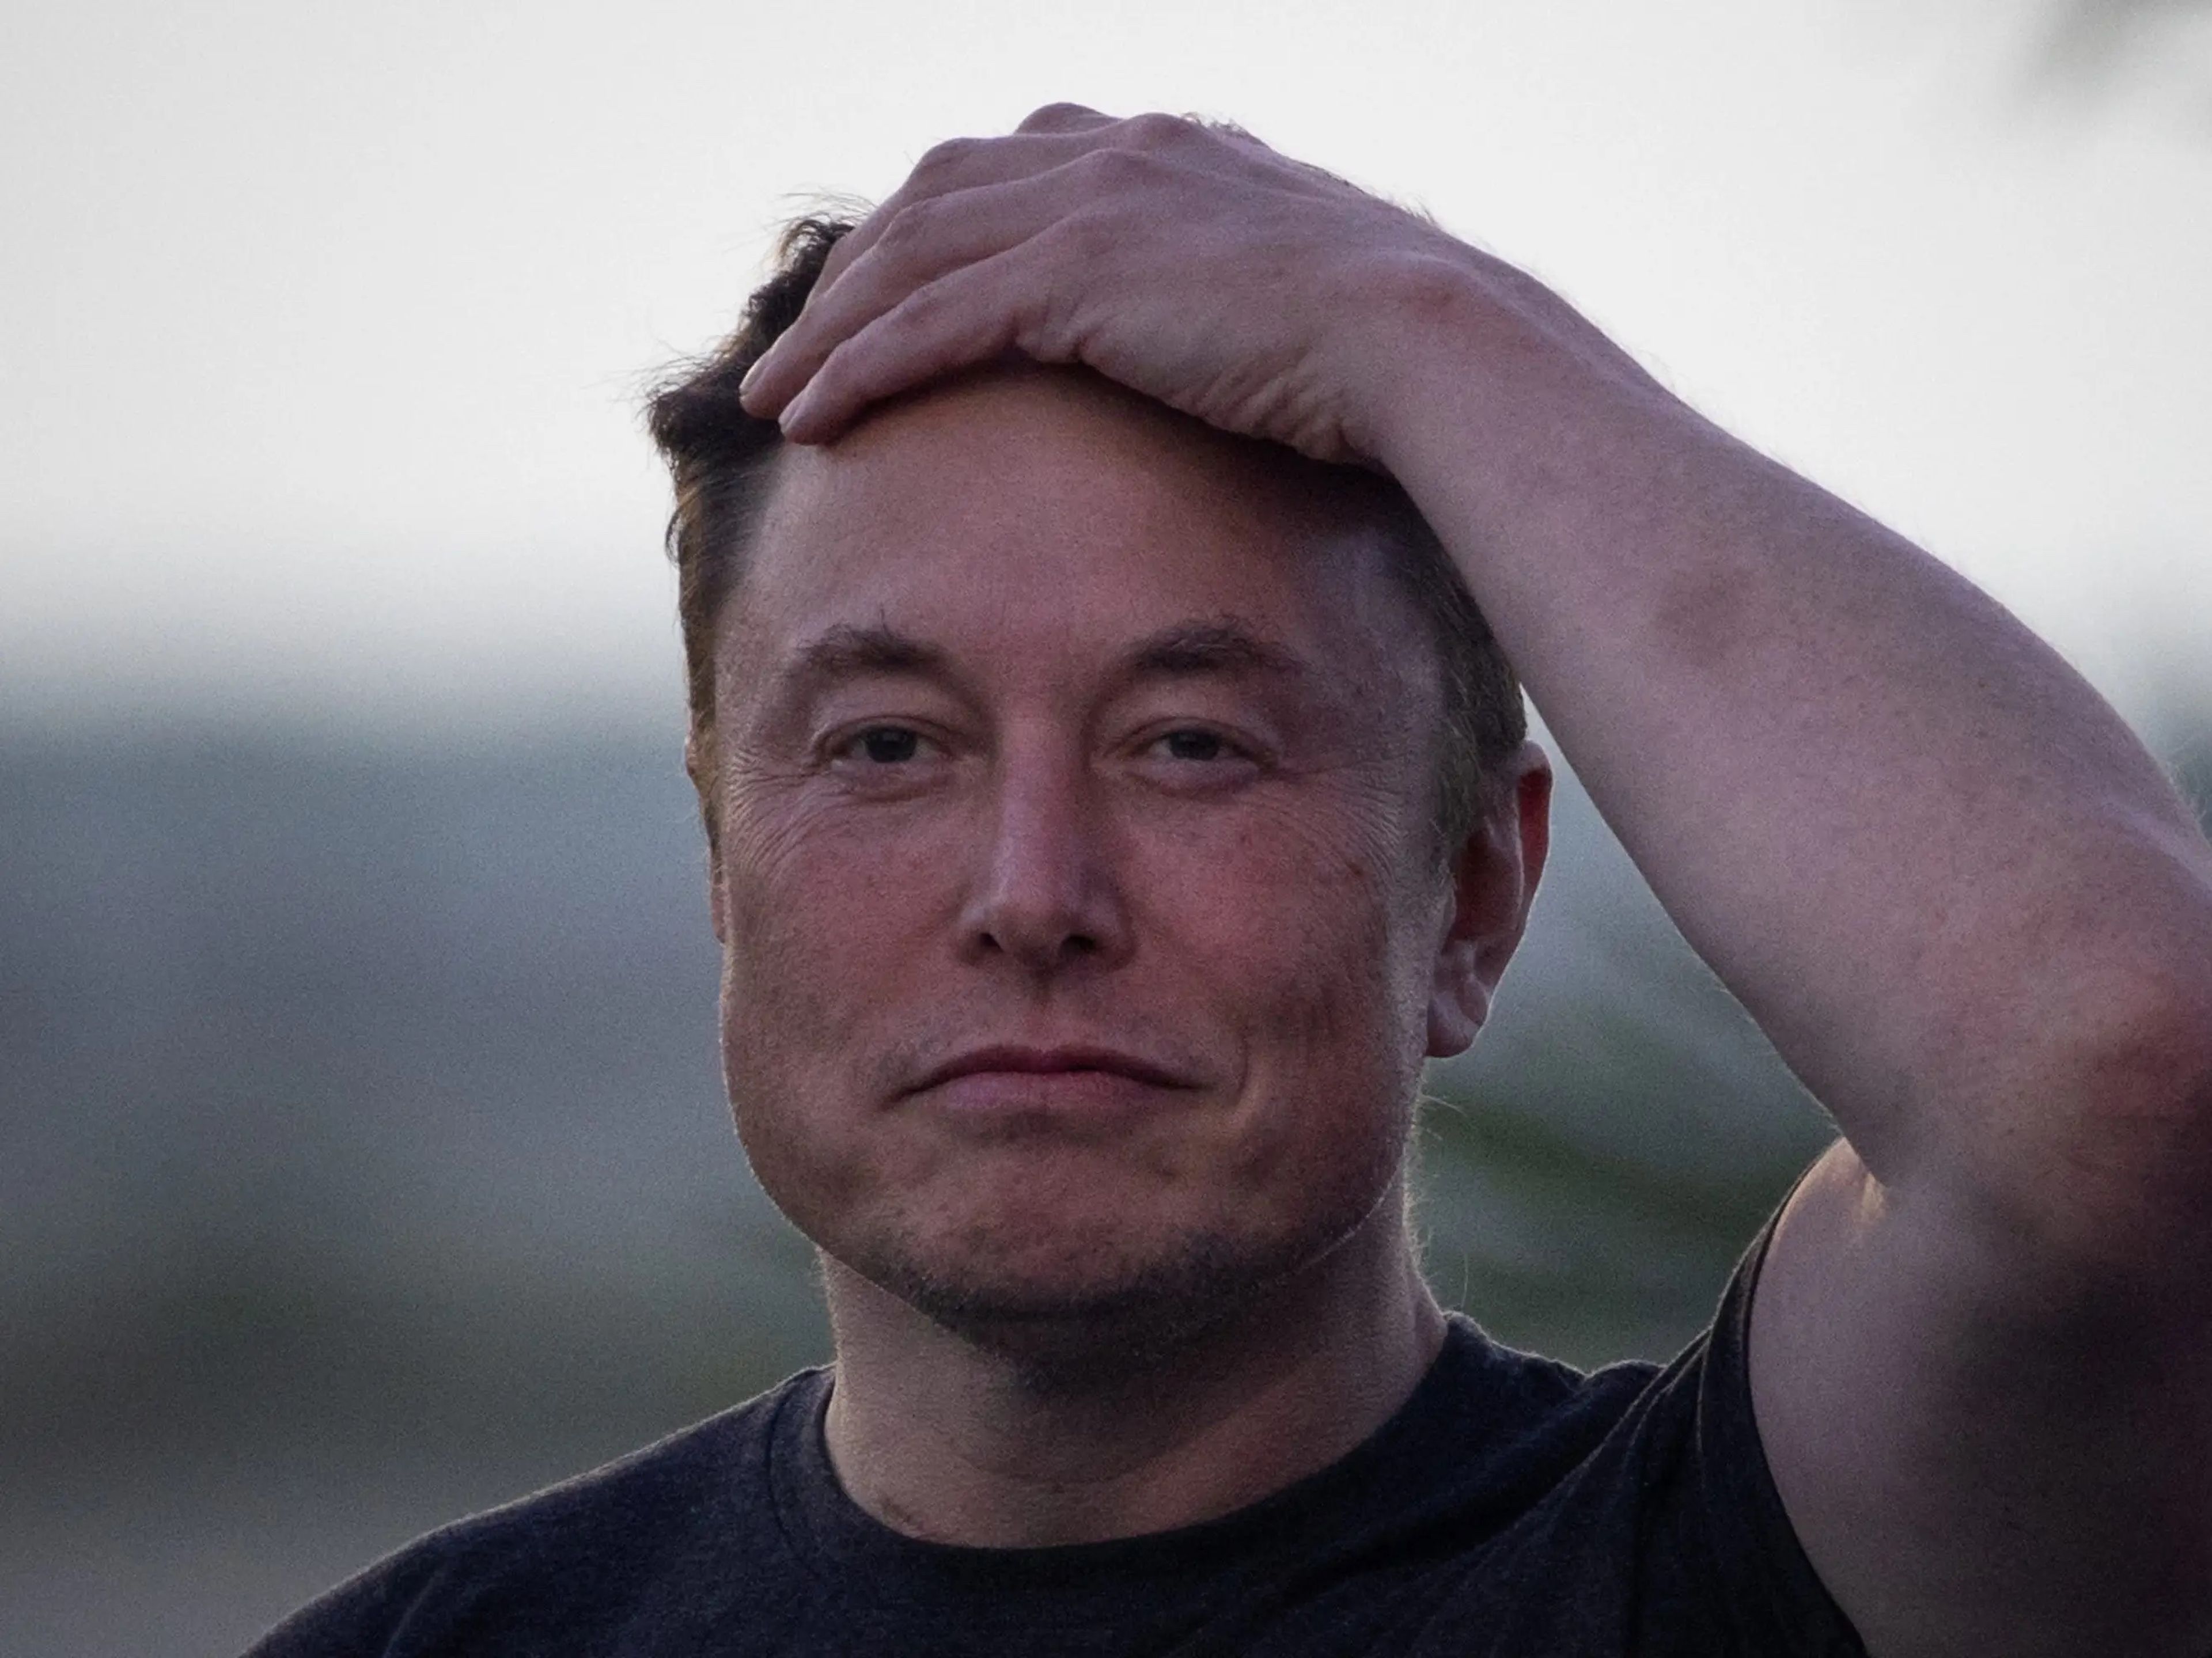 El patrimonio neto de Elon Musk se ha desplomado 100.000 millones de dólares en lo que va de año, pero sigue siendo la persona más rica del mundo.